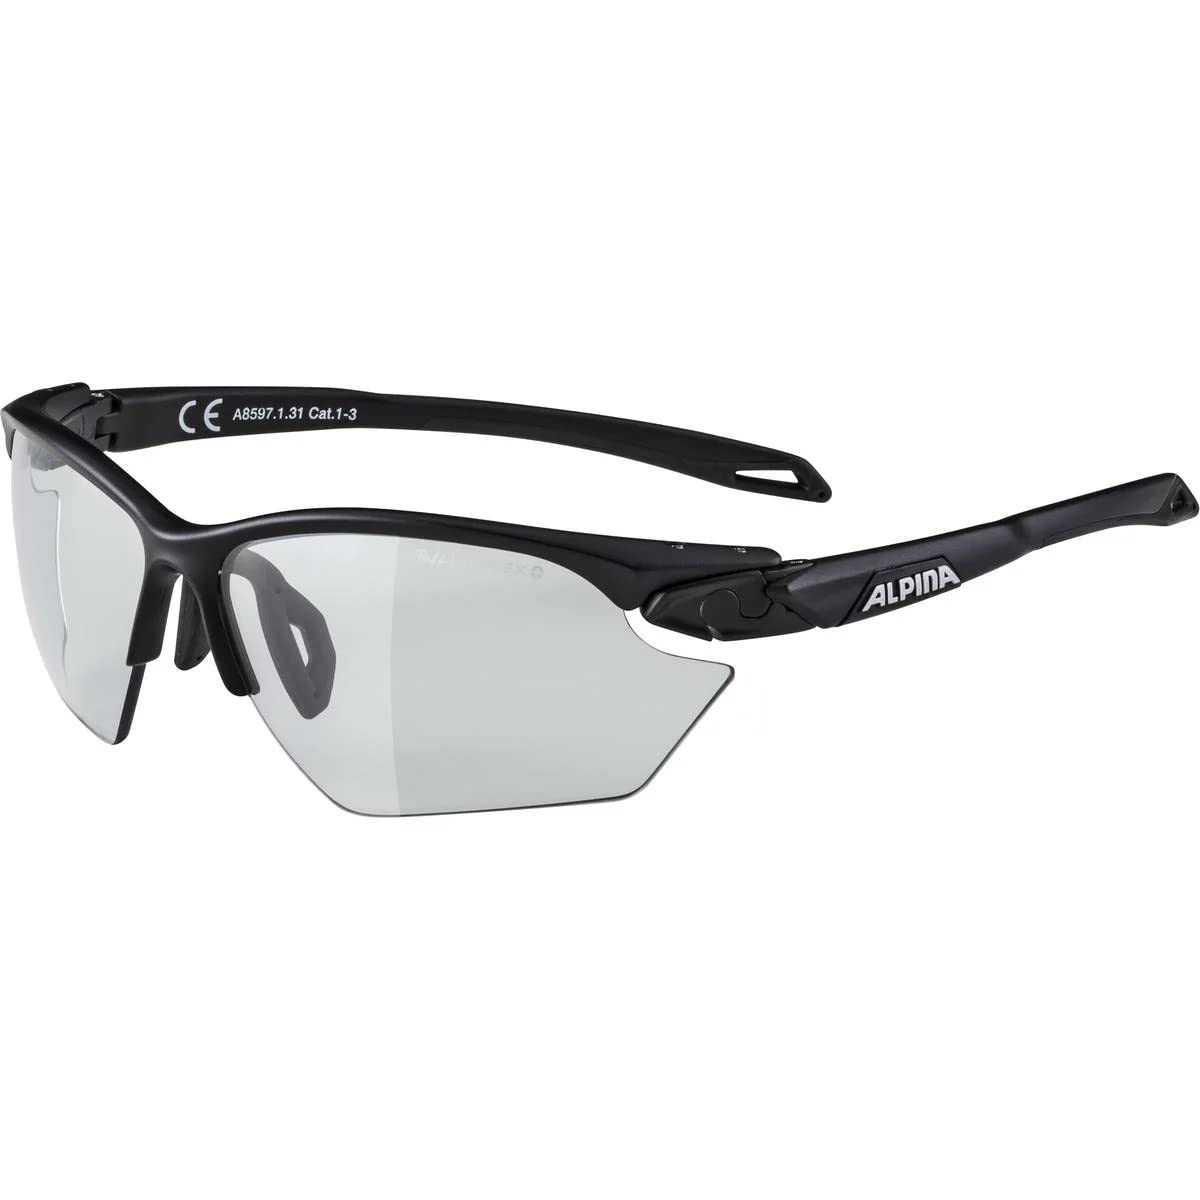 ALPINA TWIST FIVE S HR V - Selbsttönende, Bruchfeste & Beschlagfreie Sport- & Fahrradbrille Mit 100% UV-Schutz Für Erwachsene, black matt, One Size